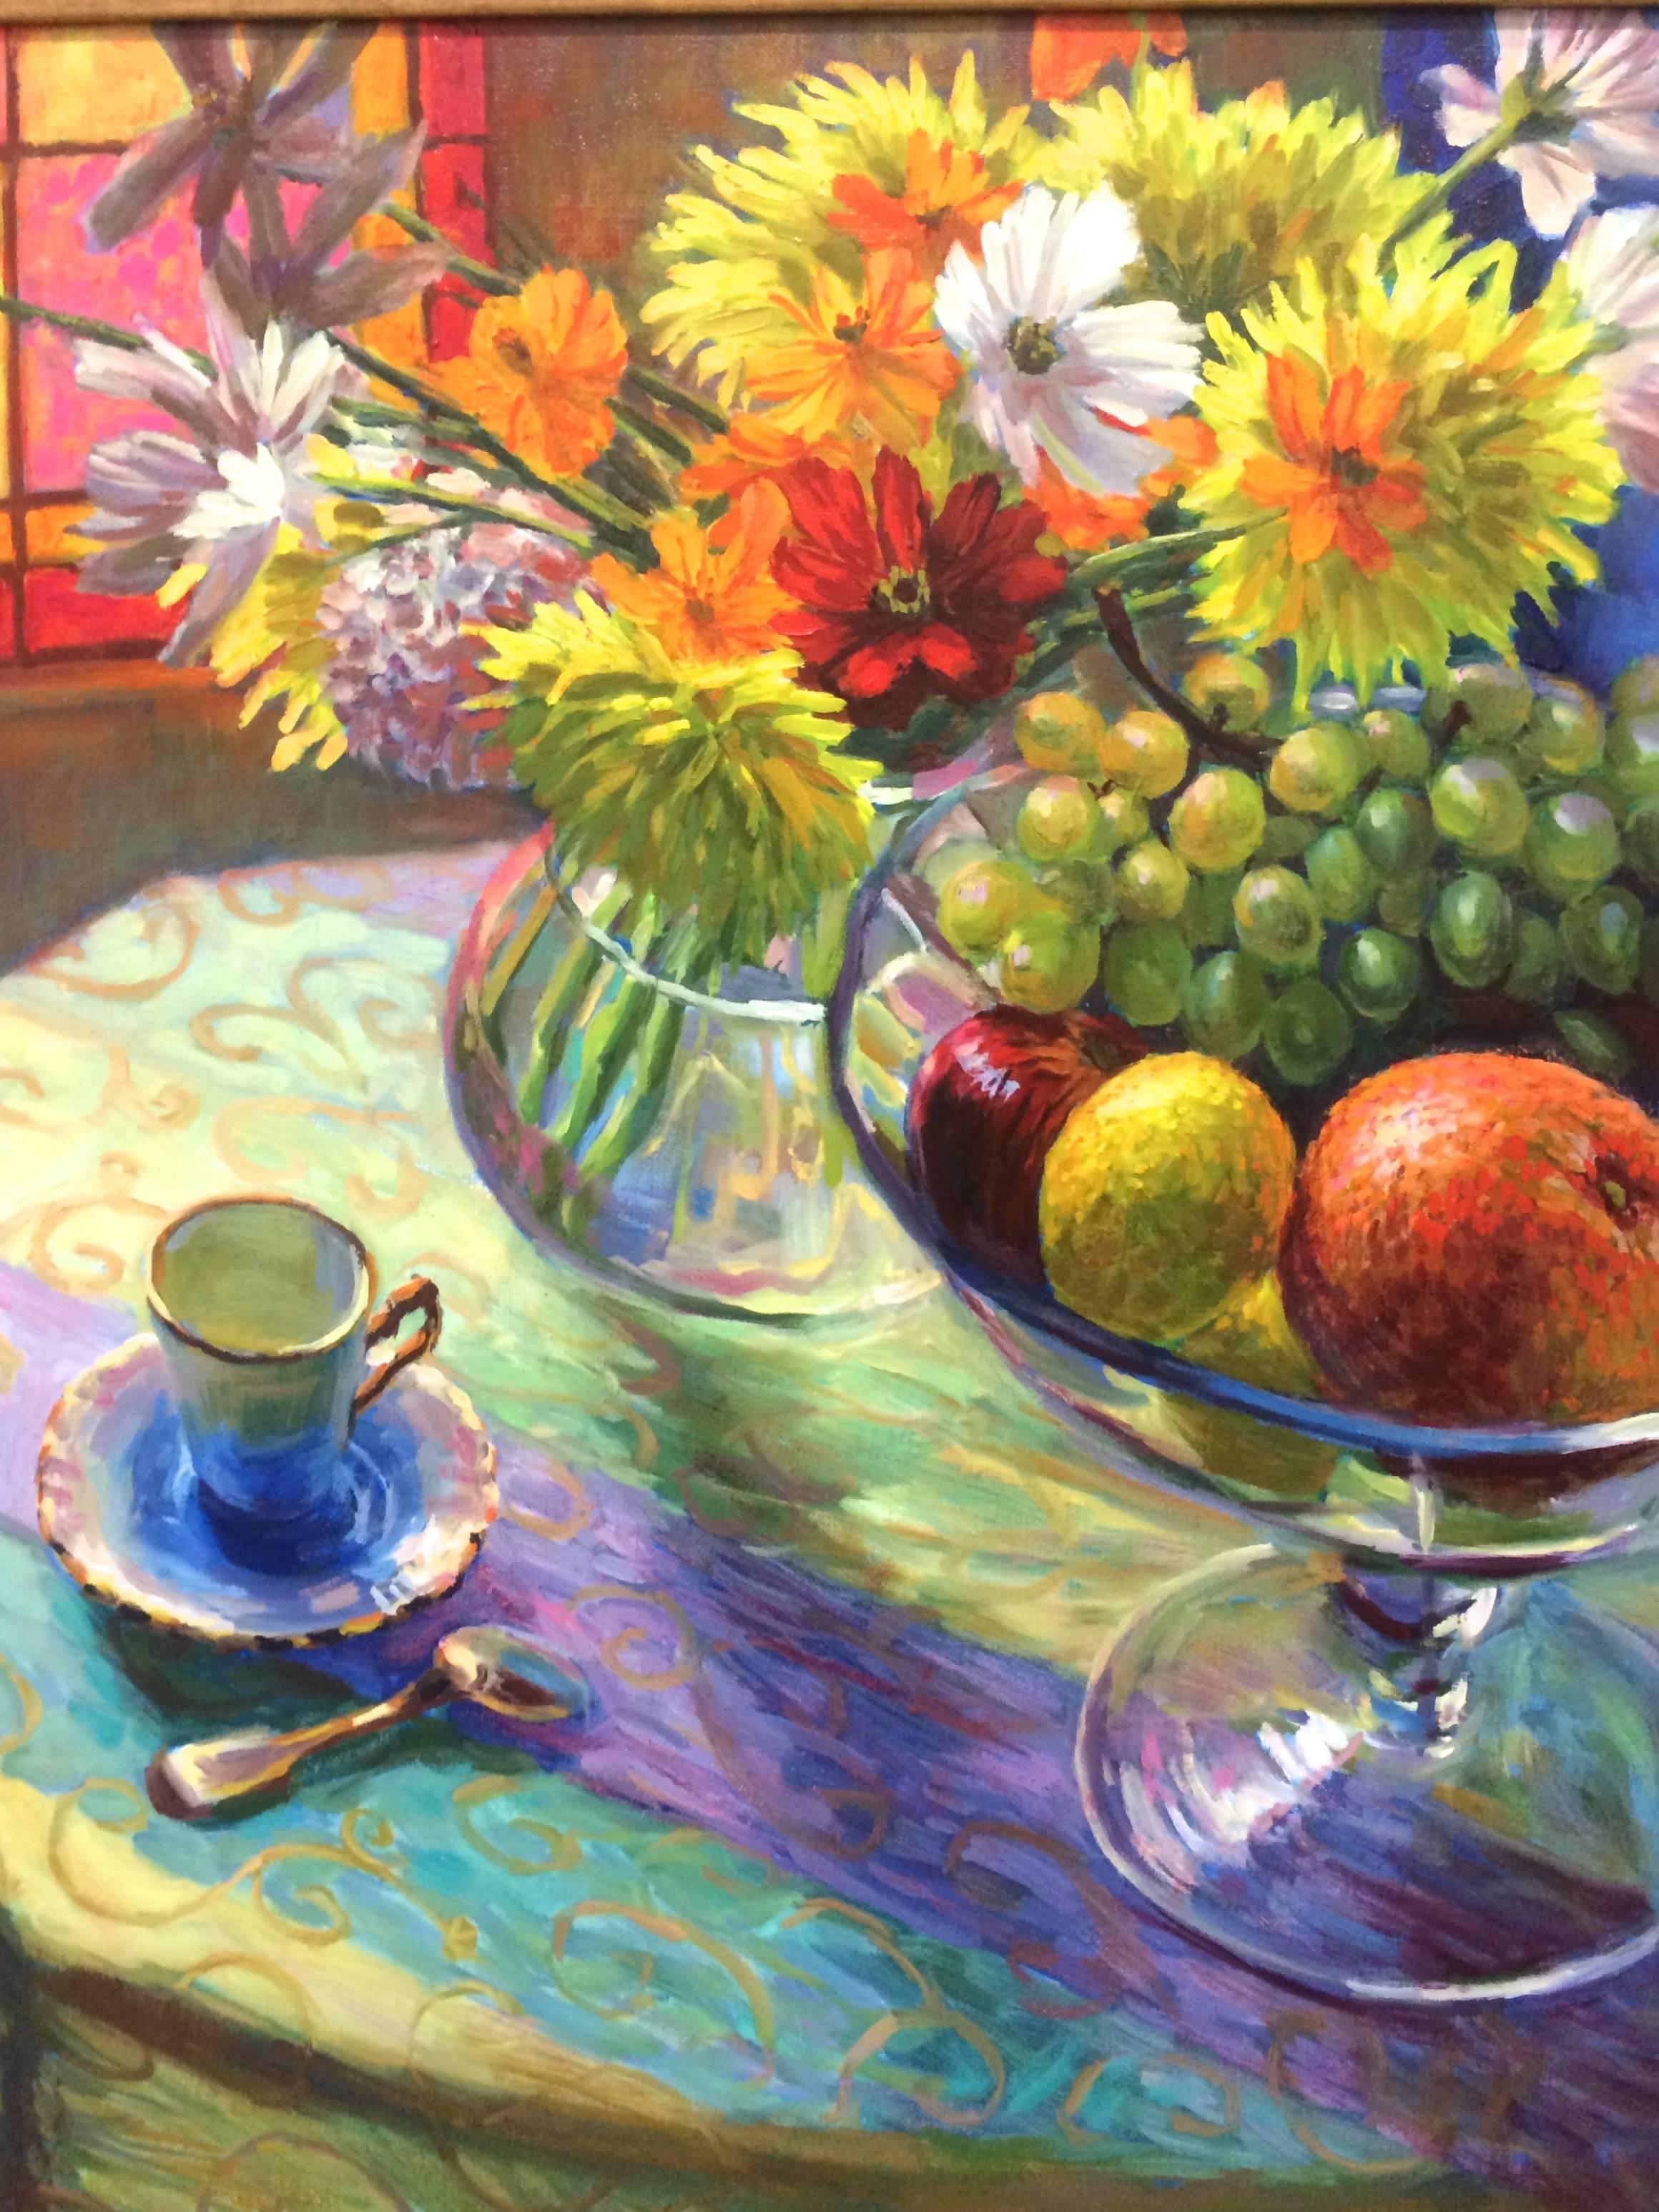  Obst und Blumen aus Obst – Painting von William Michaut 